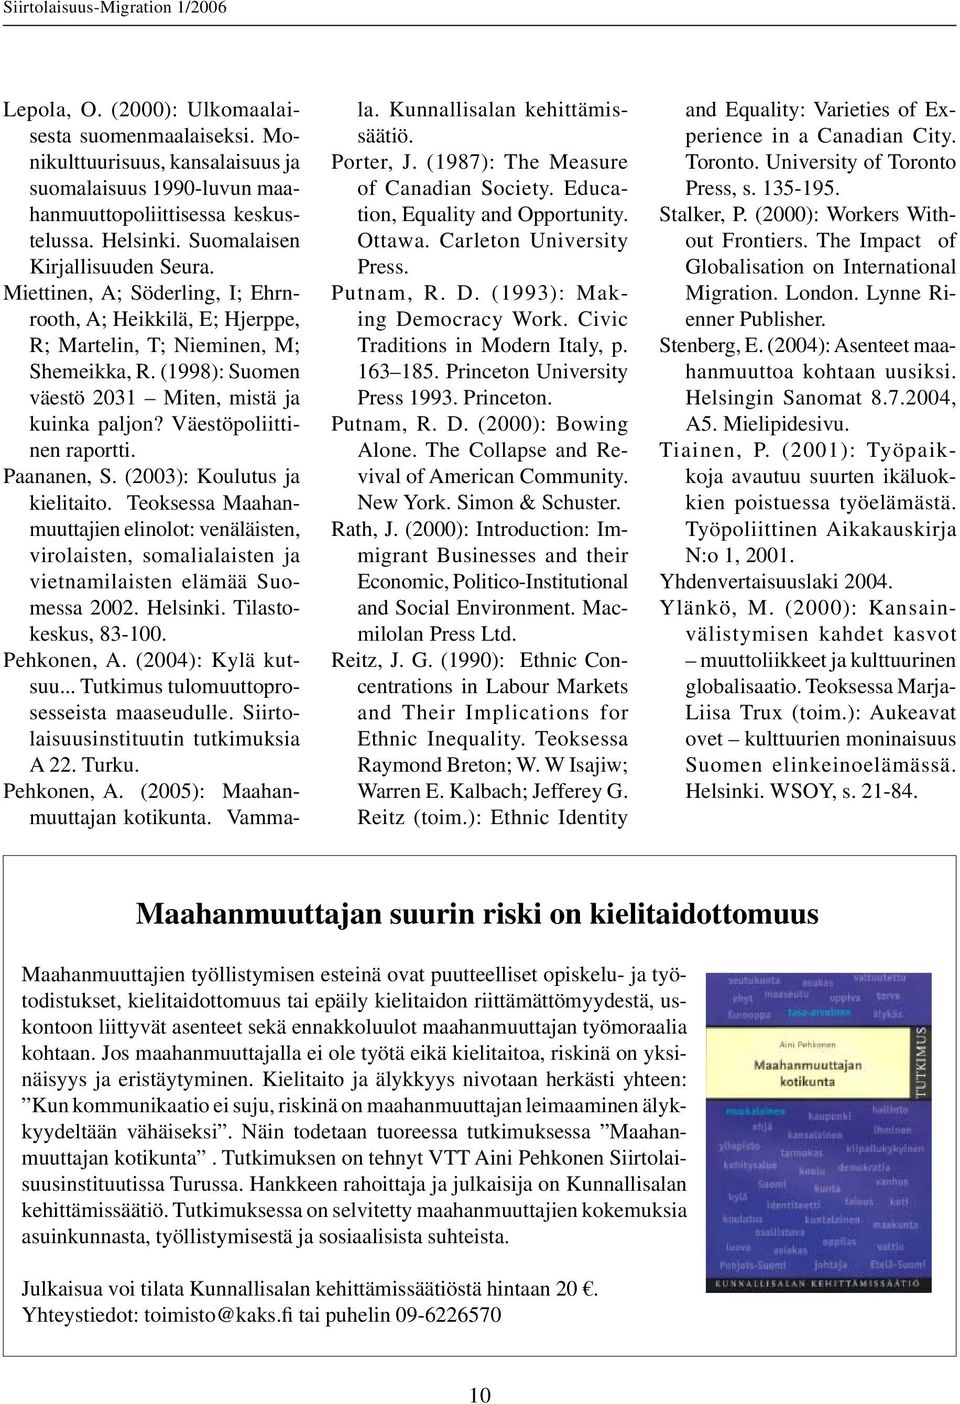 Väestöpoliittinen raportti. Paananen, S. (2003): Koulutus ja kielitaito. Teoksessa Maahanmuuttajien elinolot: venäläisten, virolaisten, somalialaisten ja vietnamilaisten elämää Suomessa 2002.